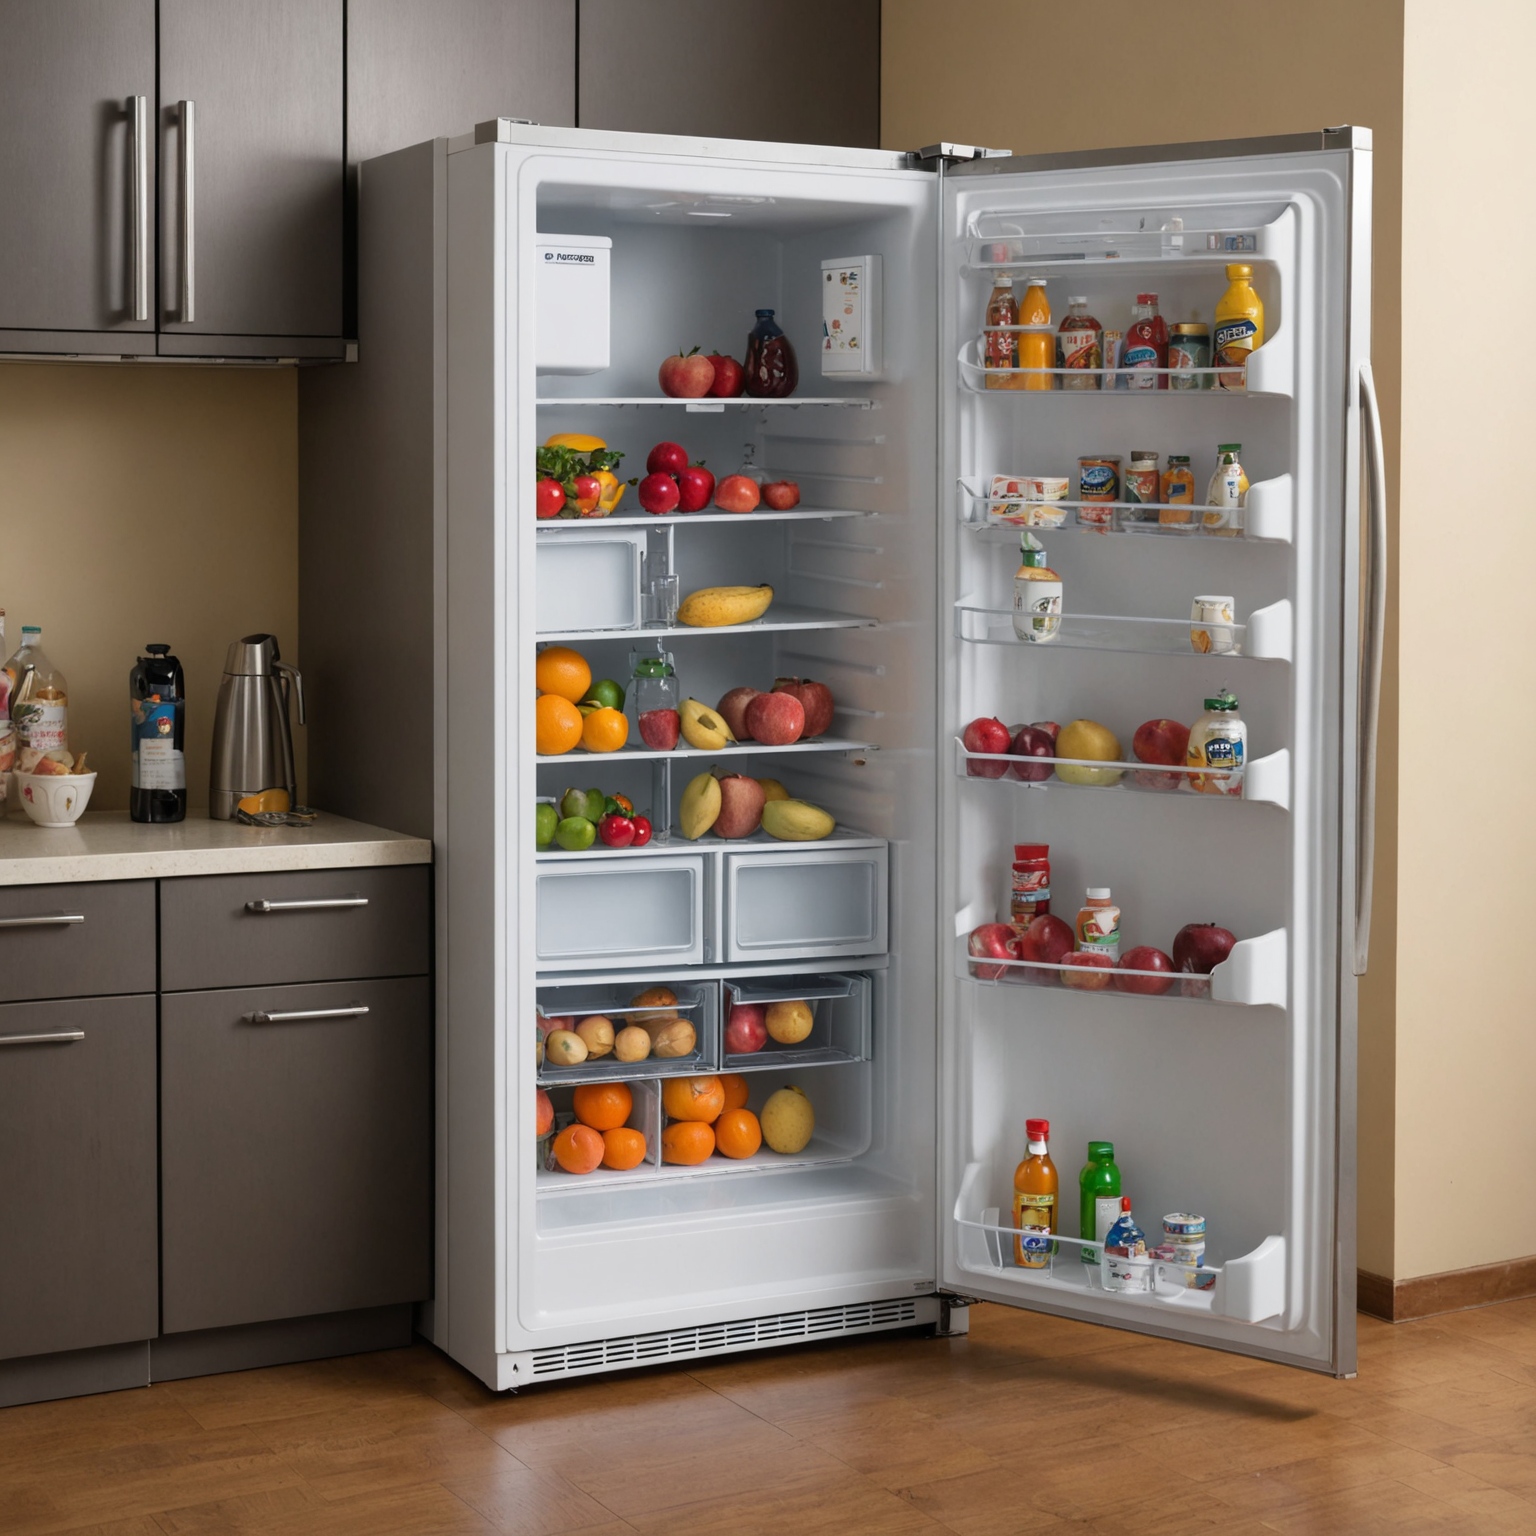 Перевозка холодильника: подготовка и основные правила